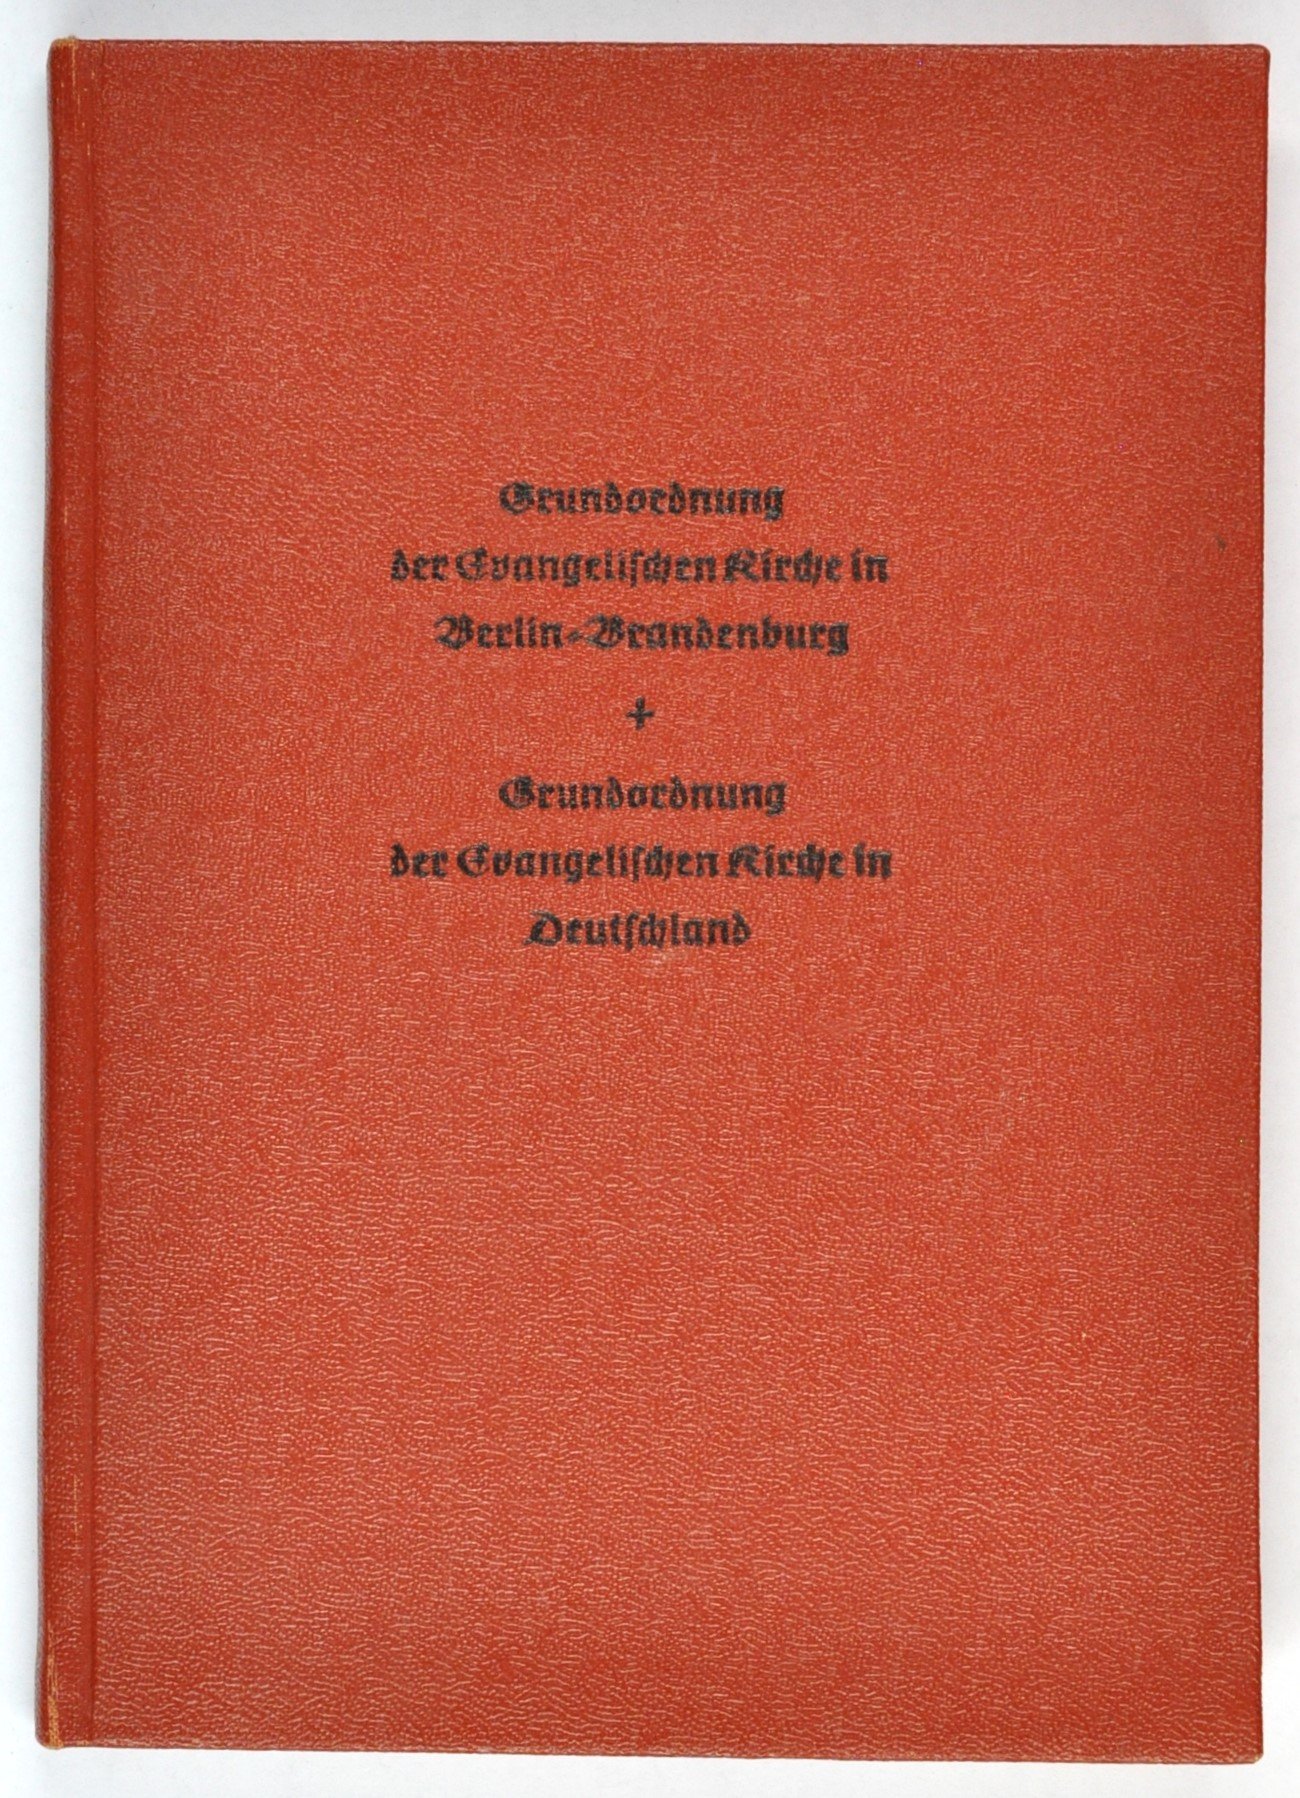 Buch: Grundordnung der evangelischen Kirche in Berlin-Brandenburg, Berlin 1953 (DDR Geschichtsmuseum im Dokumentationszentrum Perleberg CC BY-SA)